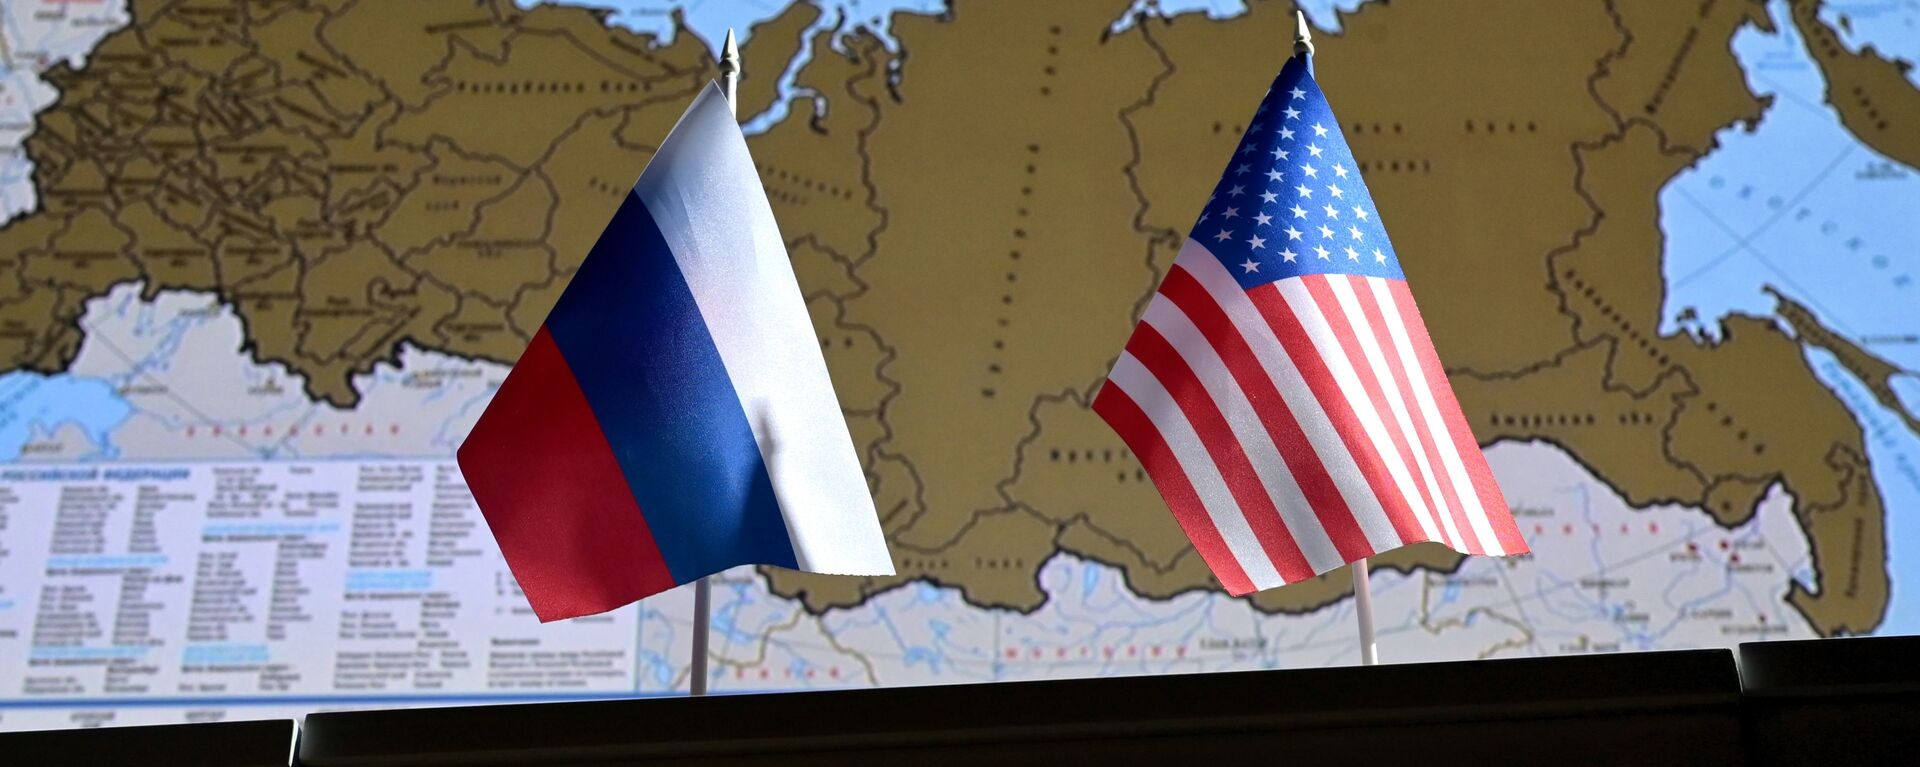 Государственные флаги России и США. - Sputnik Абхазия, 1920, 01.05.2021